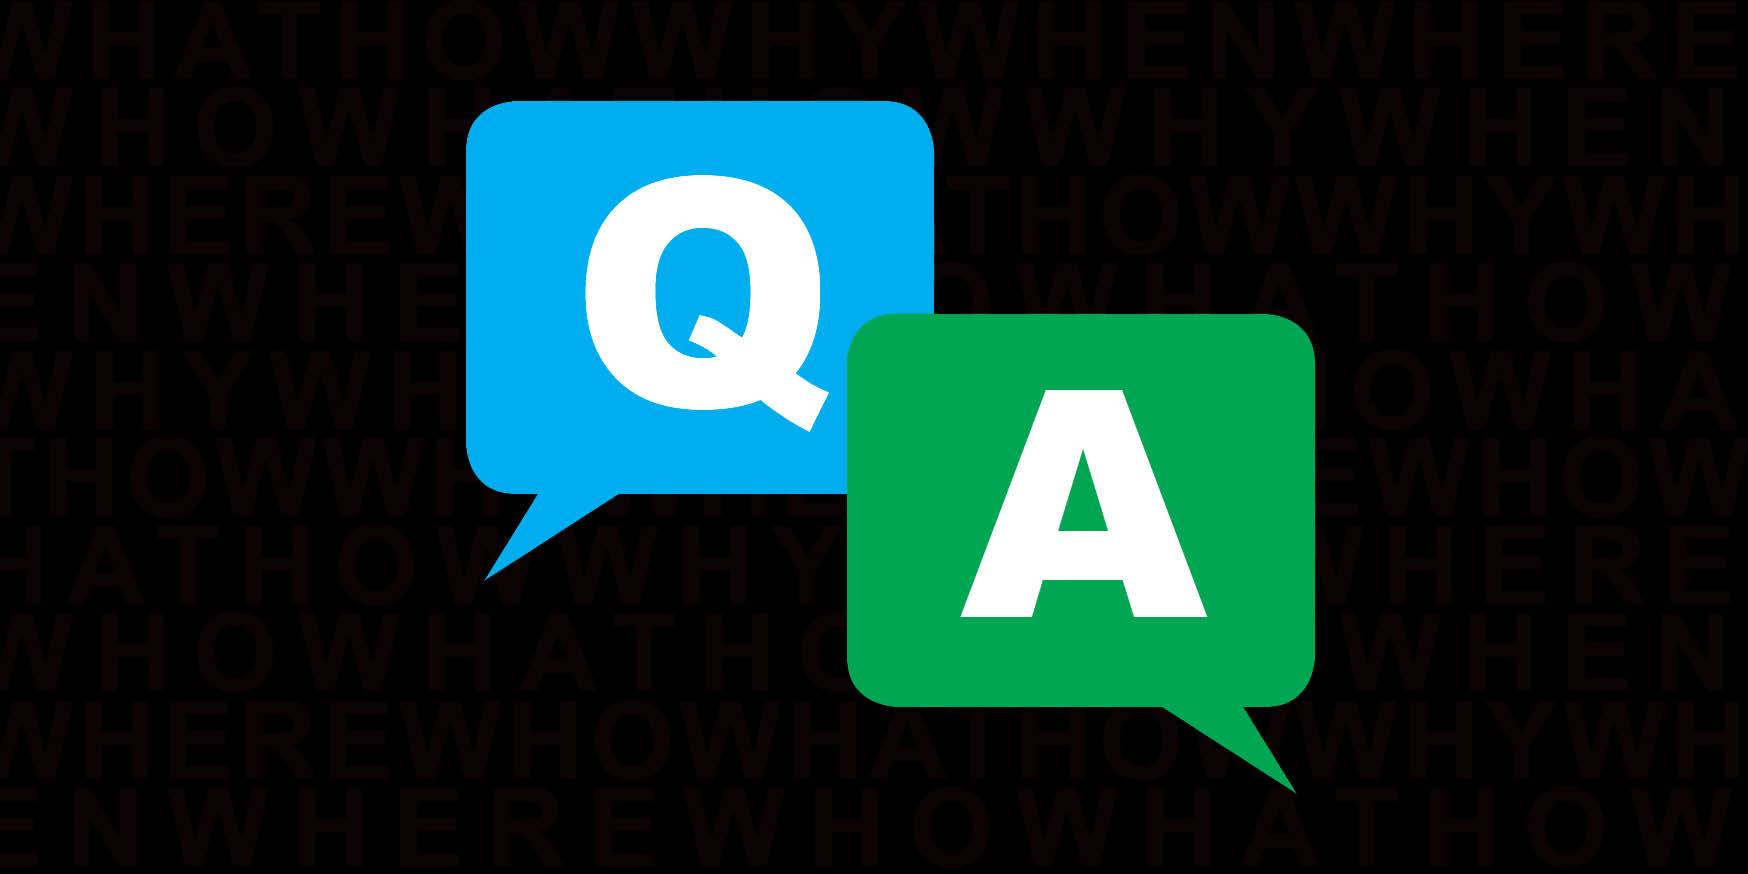 Q&A – 8AM Service